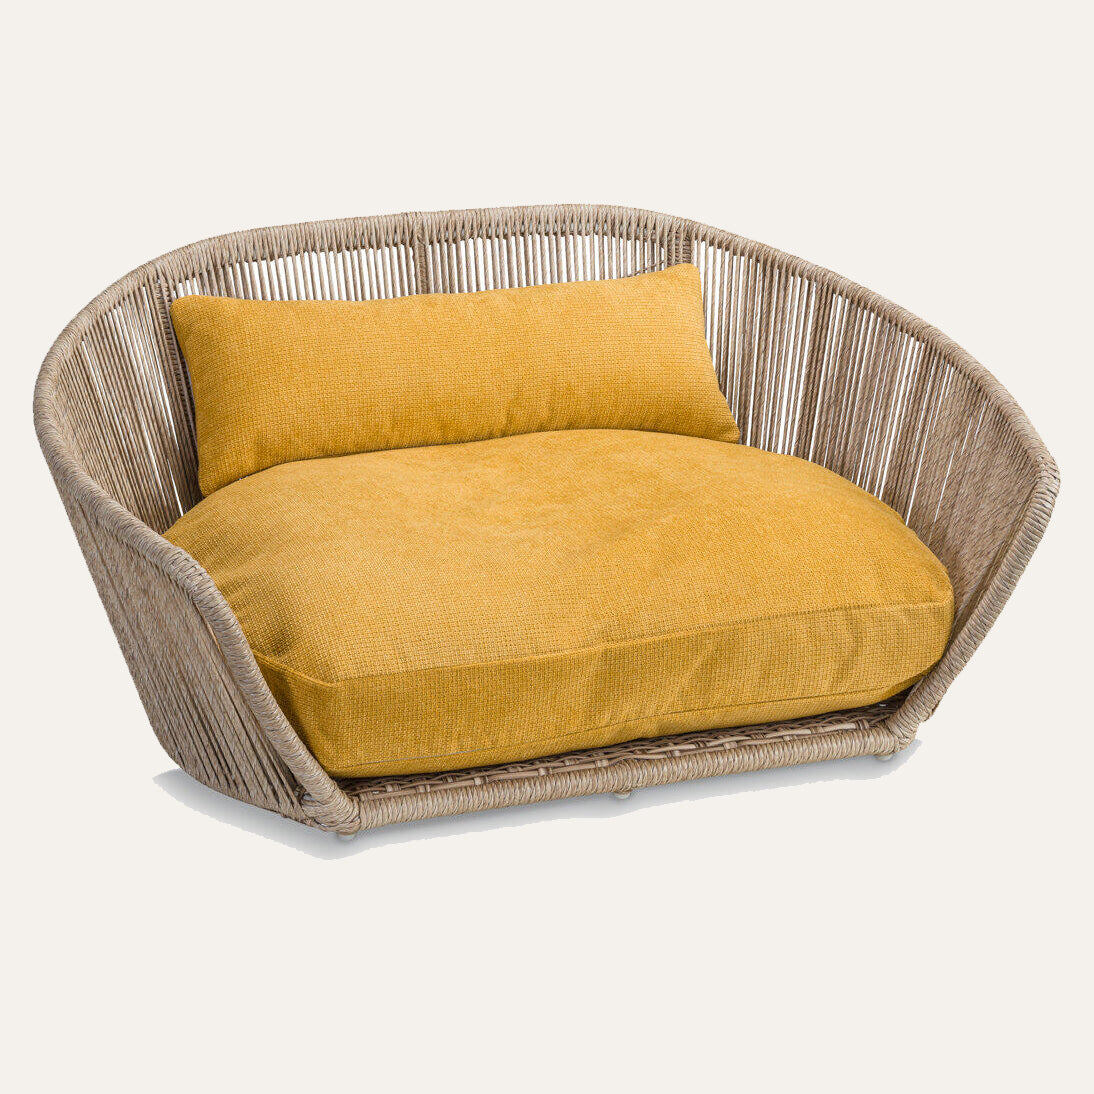 VOGUE - TUDOR designer dog bed